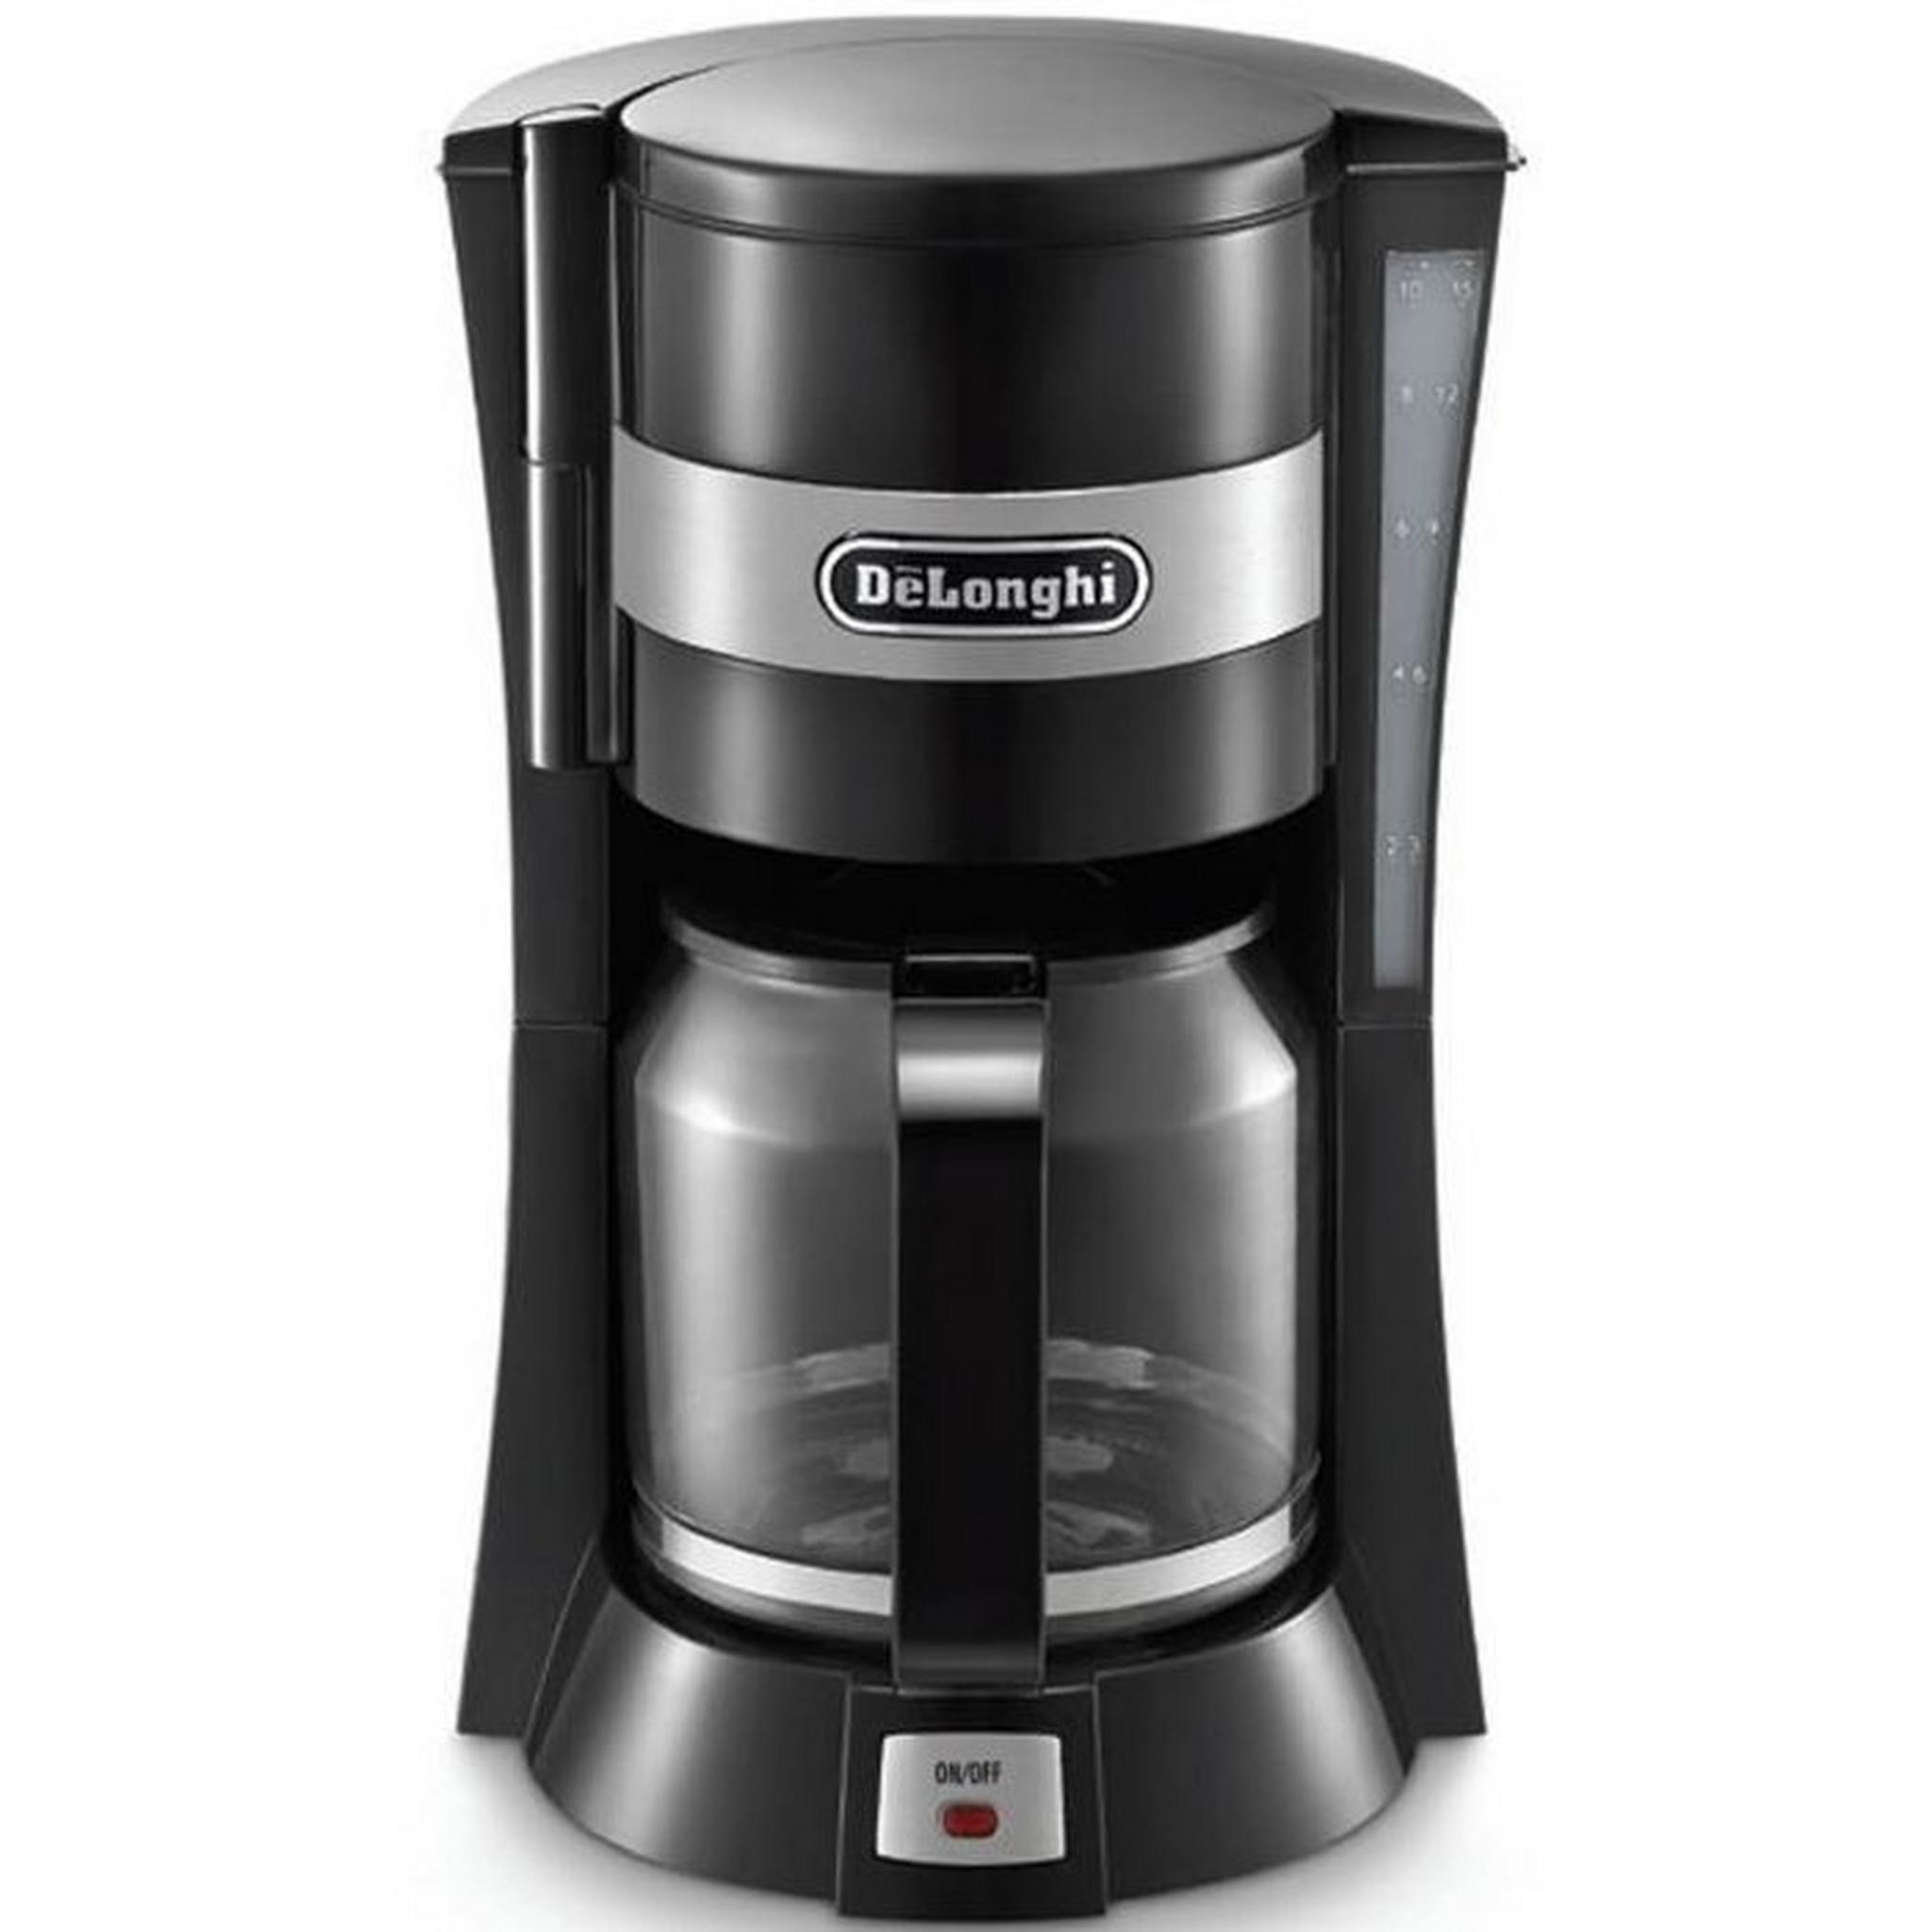 ماكينة القهوة بالتنقيط  بسعة 1.25 لتر من ديلونجي (DLICM15211)